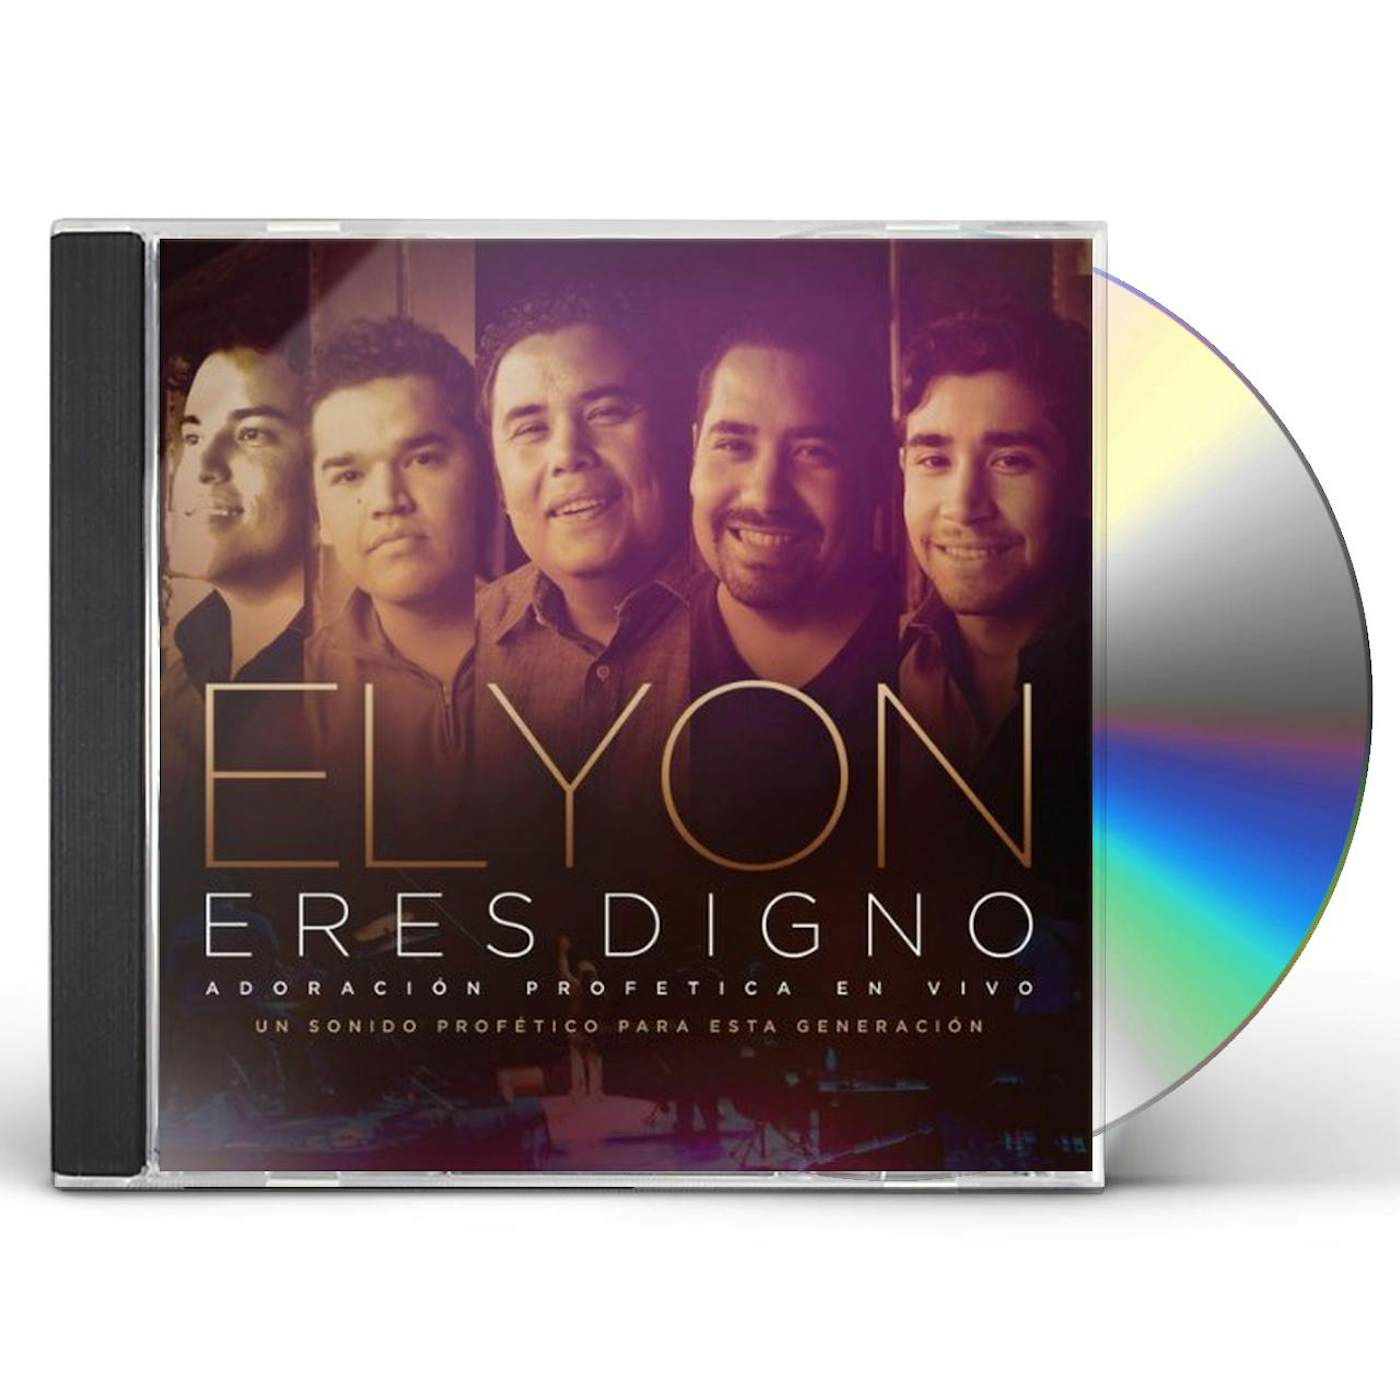 Elyon ERES DIGNO CD